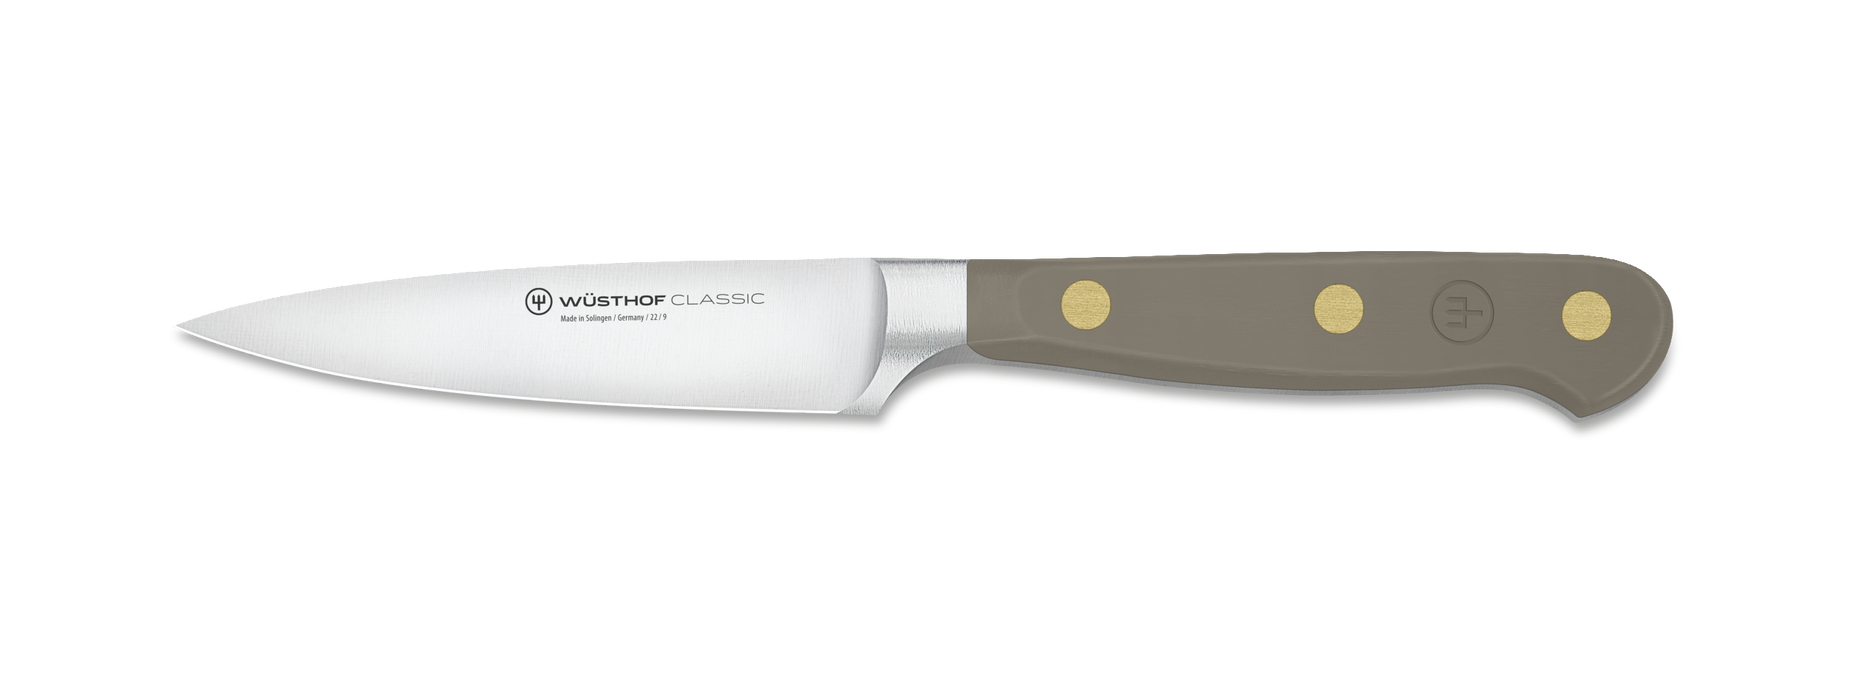 PARING KNIFE CLASSIC VELVET OYSTER 3.5IN